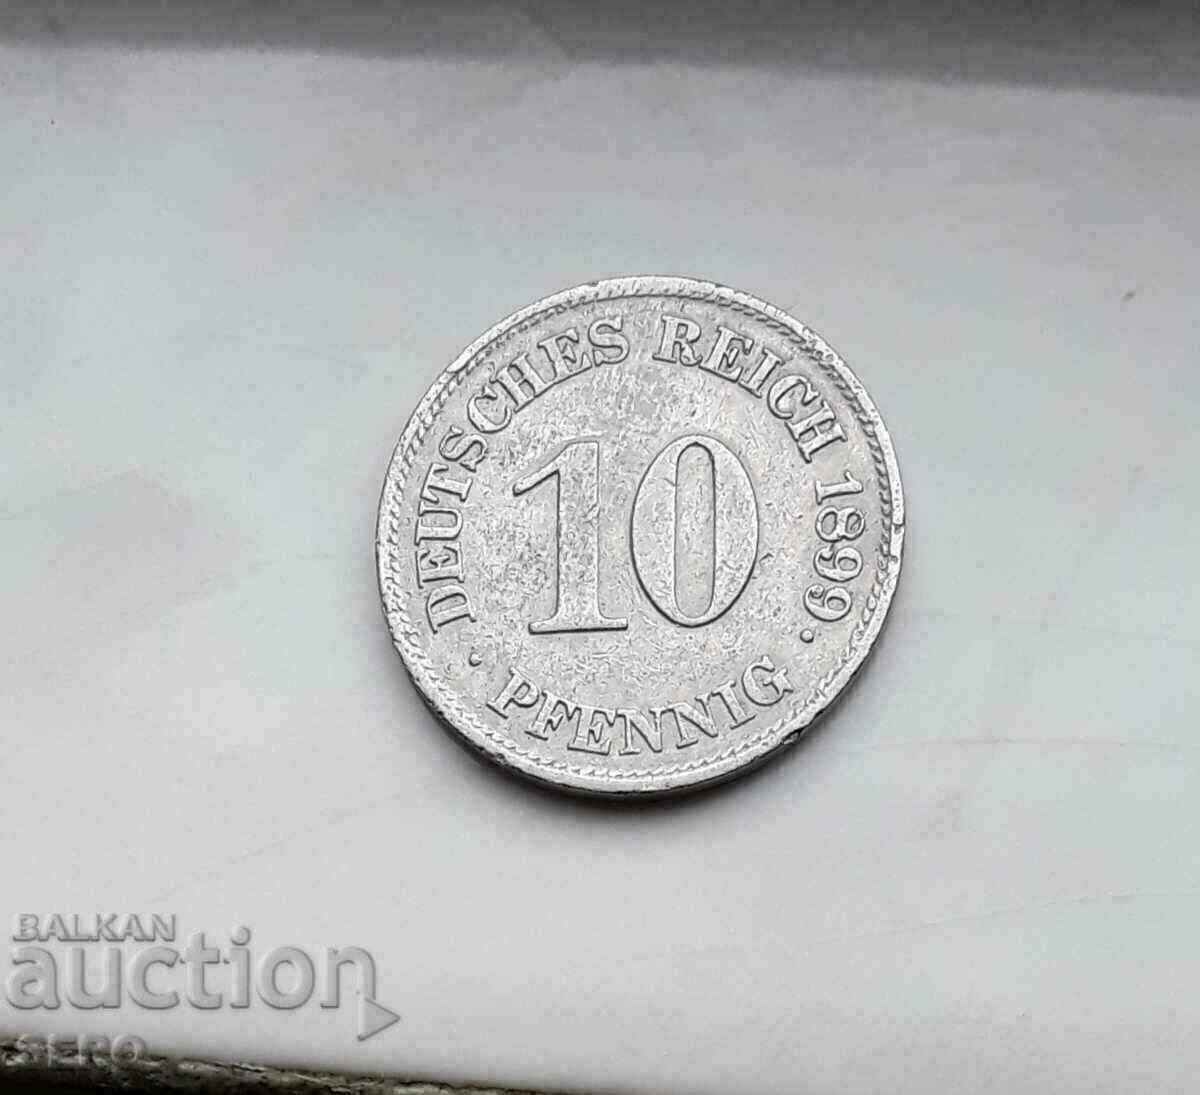 Γερμανία-10 Pfennig 1899 E-Muldenhüten